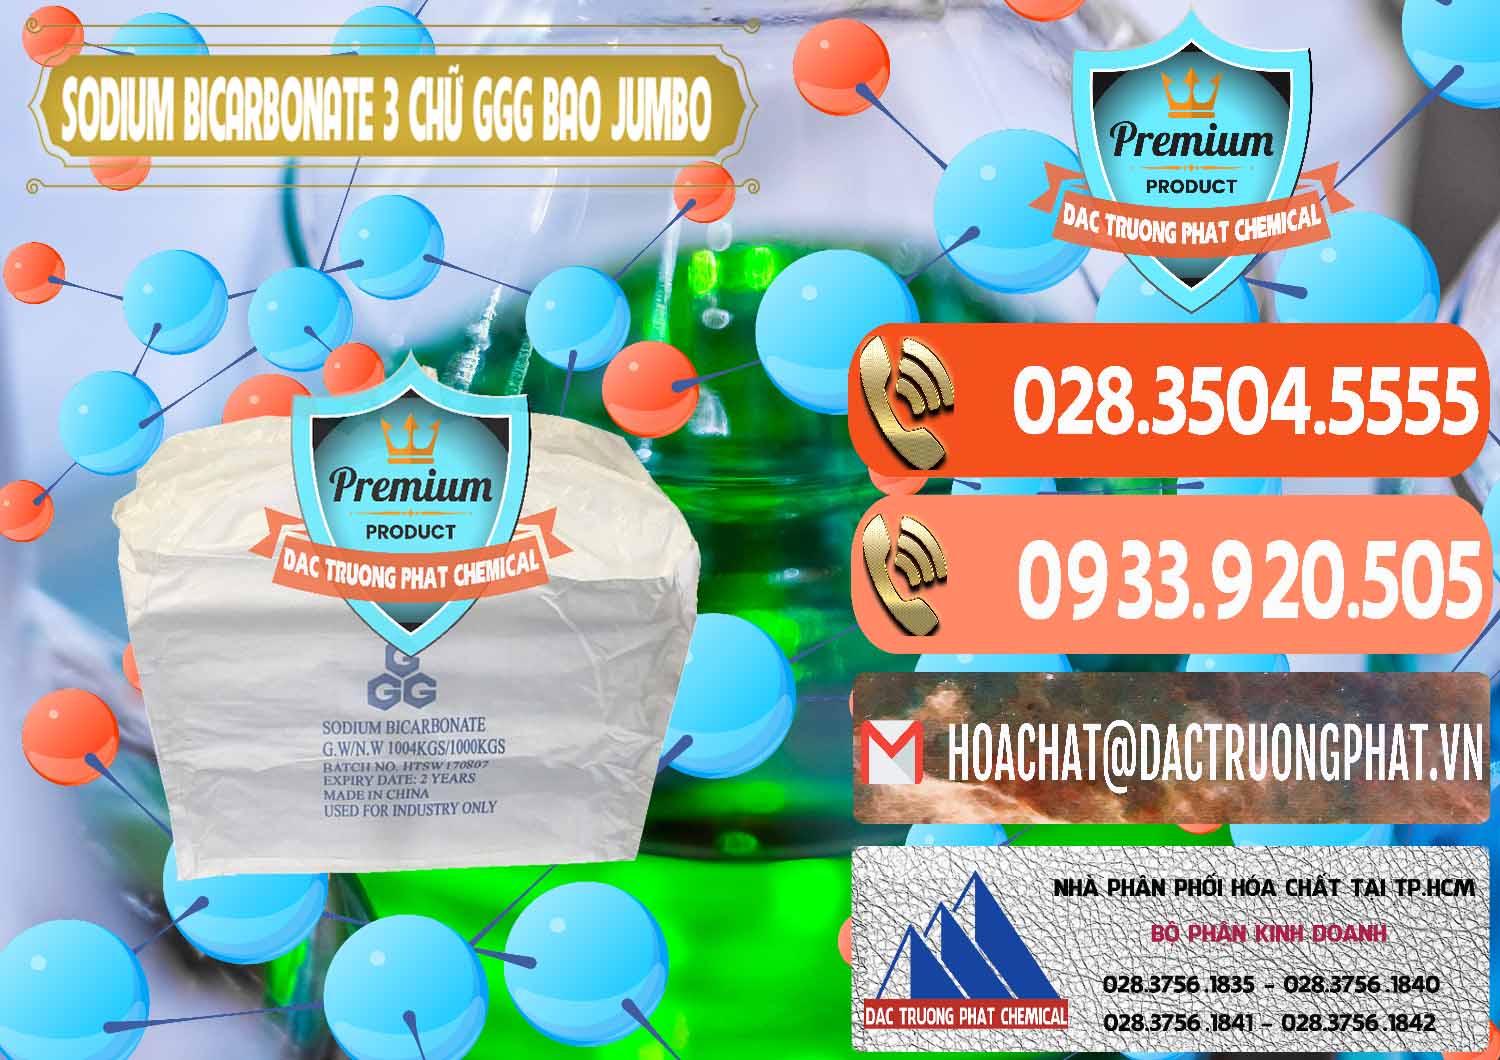 Cung cấp - bán Sodium Bicarbonate – Bicar NaHCO3 Food Grade 3 Chữ GGG Bao Jumbo ( Bành ) Trung Quốc China - 0260 - Cty chuyên cung cấp ( kinh doanh ) hóa chất tại TP.HCM - hoachatmientay.com